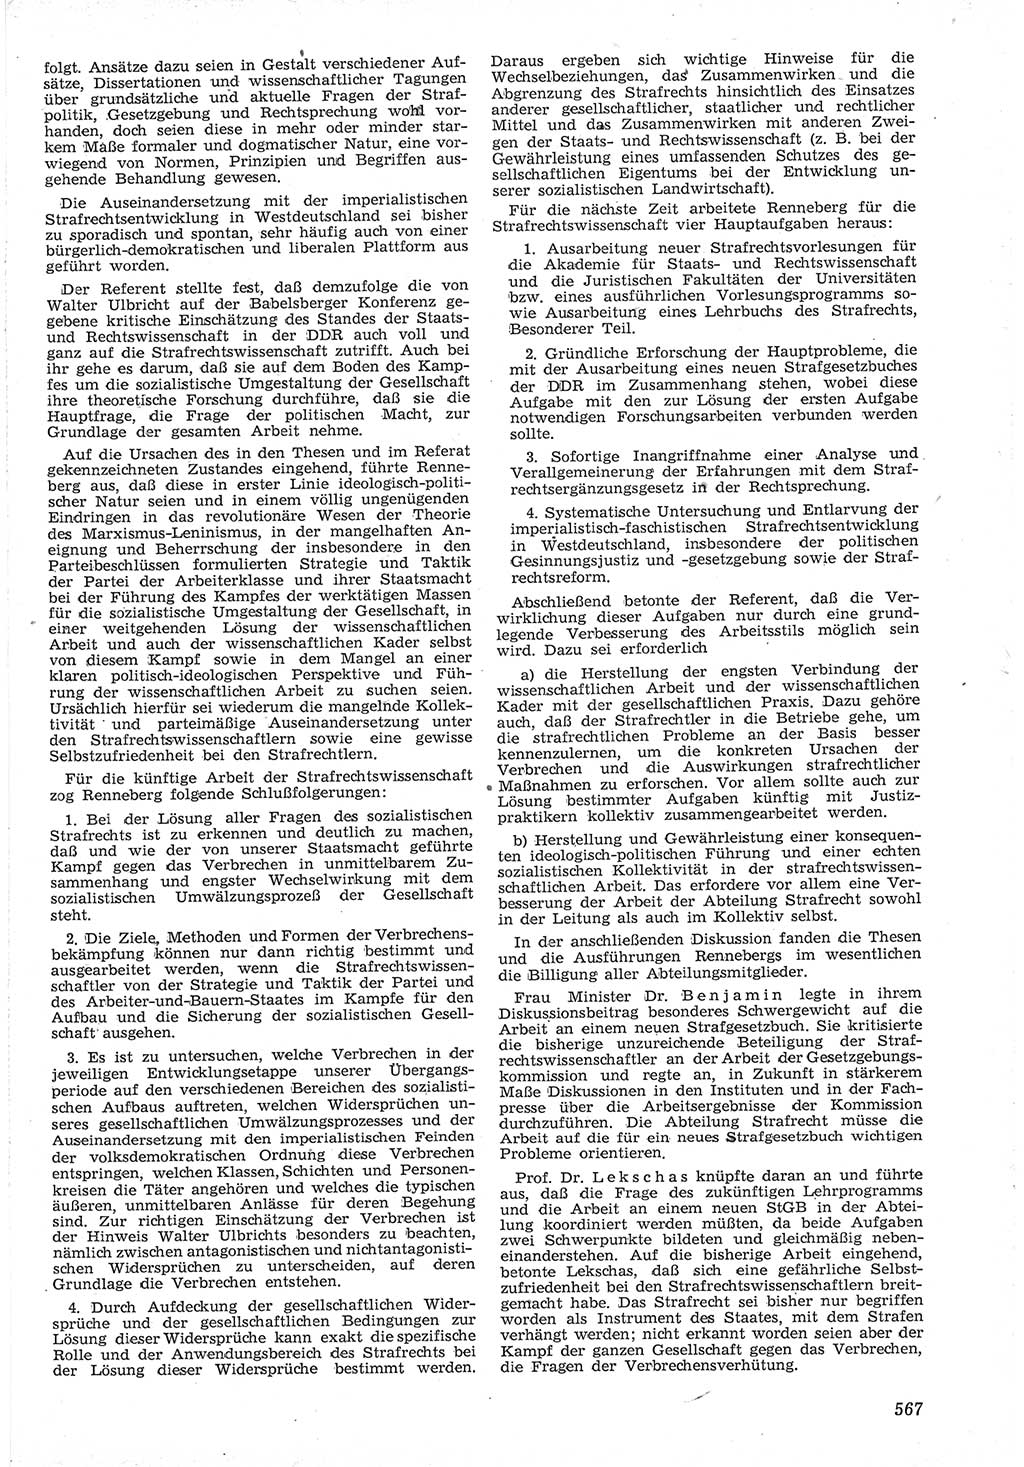 Neue Justiz (NJ), Zeitschrift für Recht und Rechtswissenschaft [Deutsche Demokratische Republik (DDR)], 12. Jahrgang 1958, Seite 567 (NJ DDR 1958, S. 567)